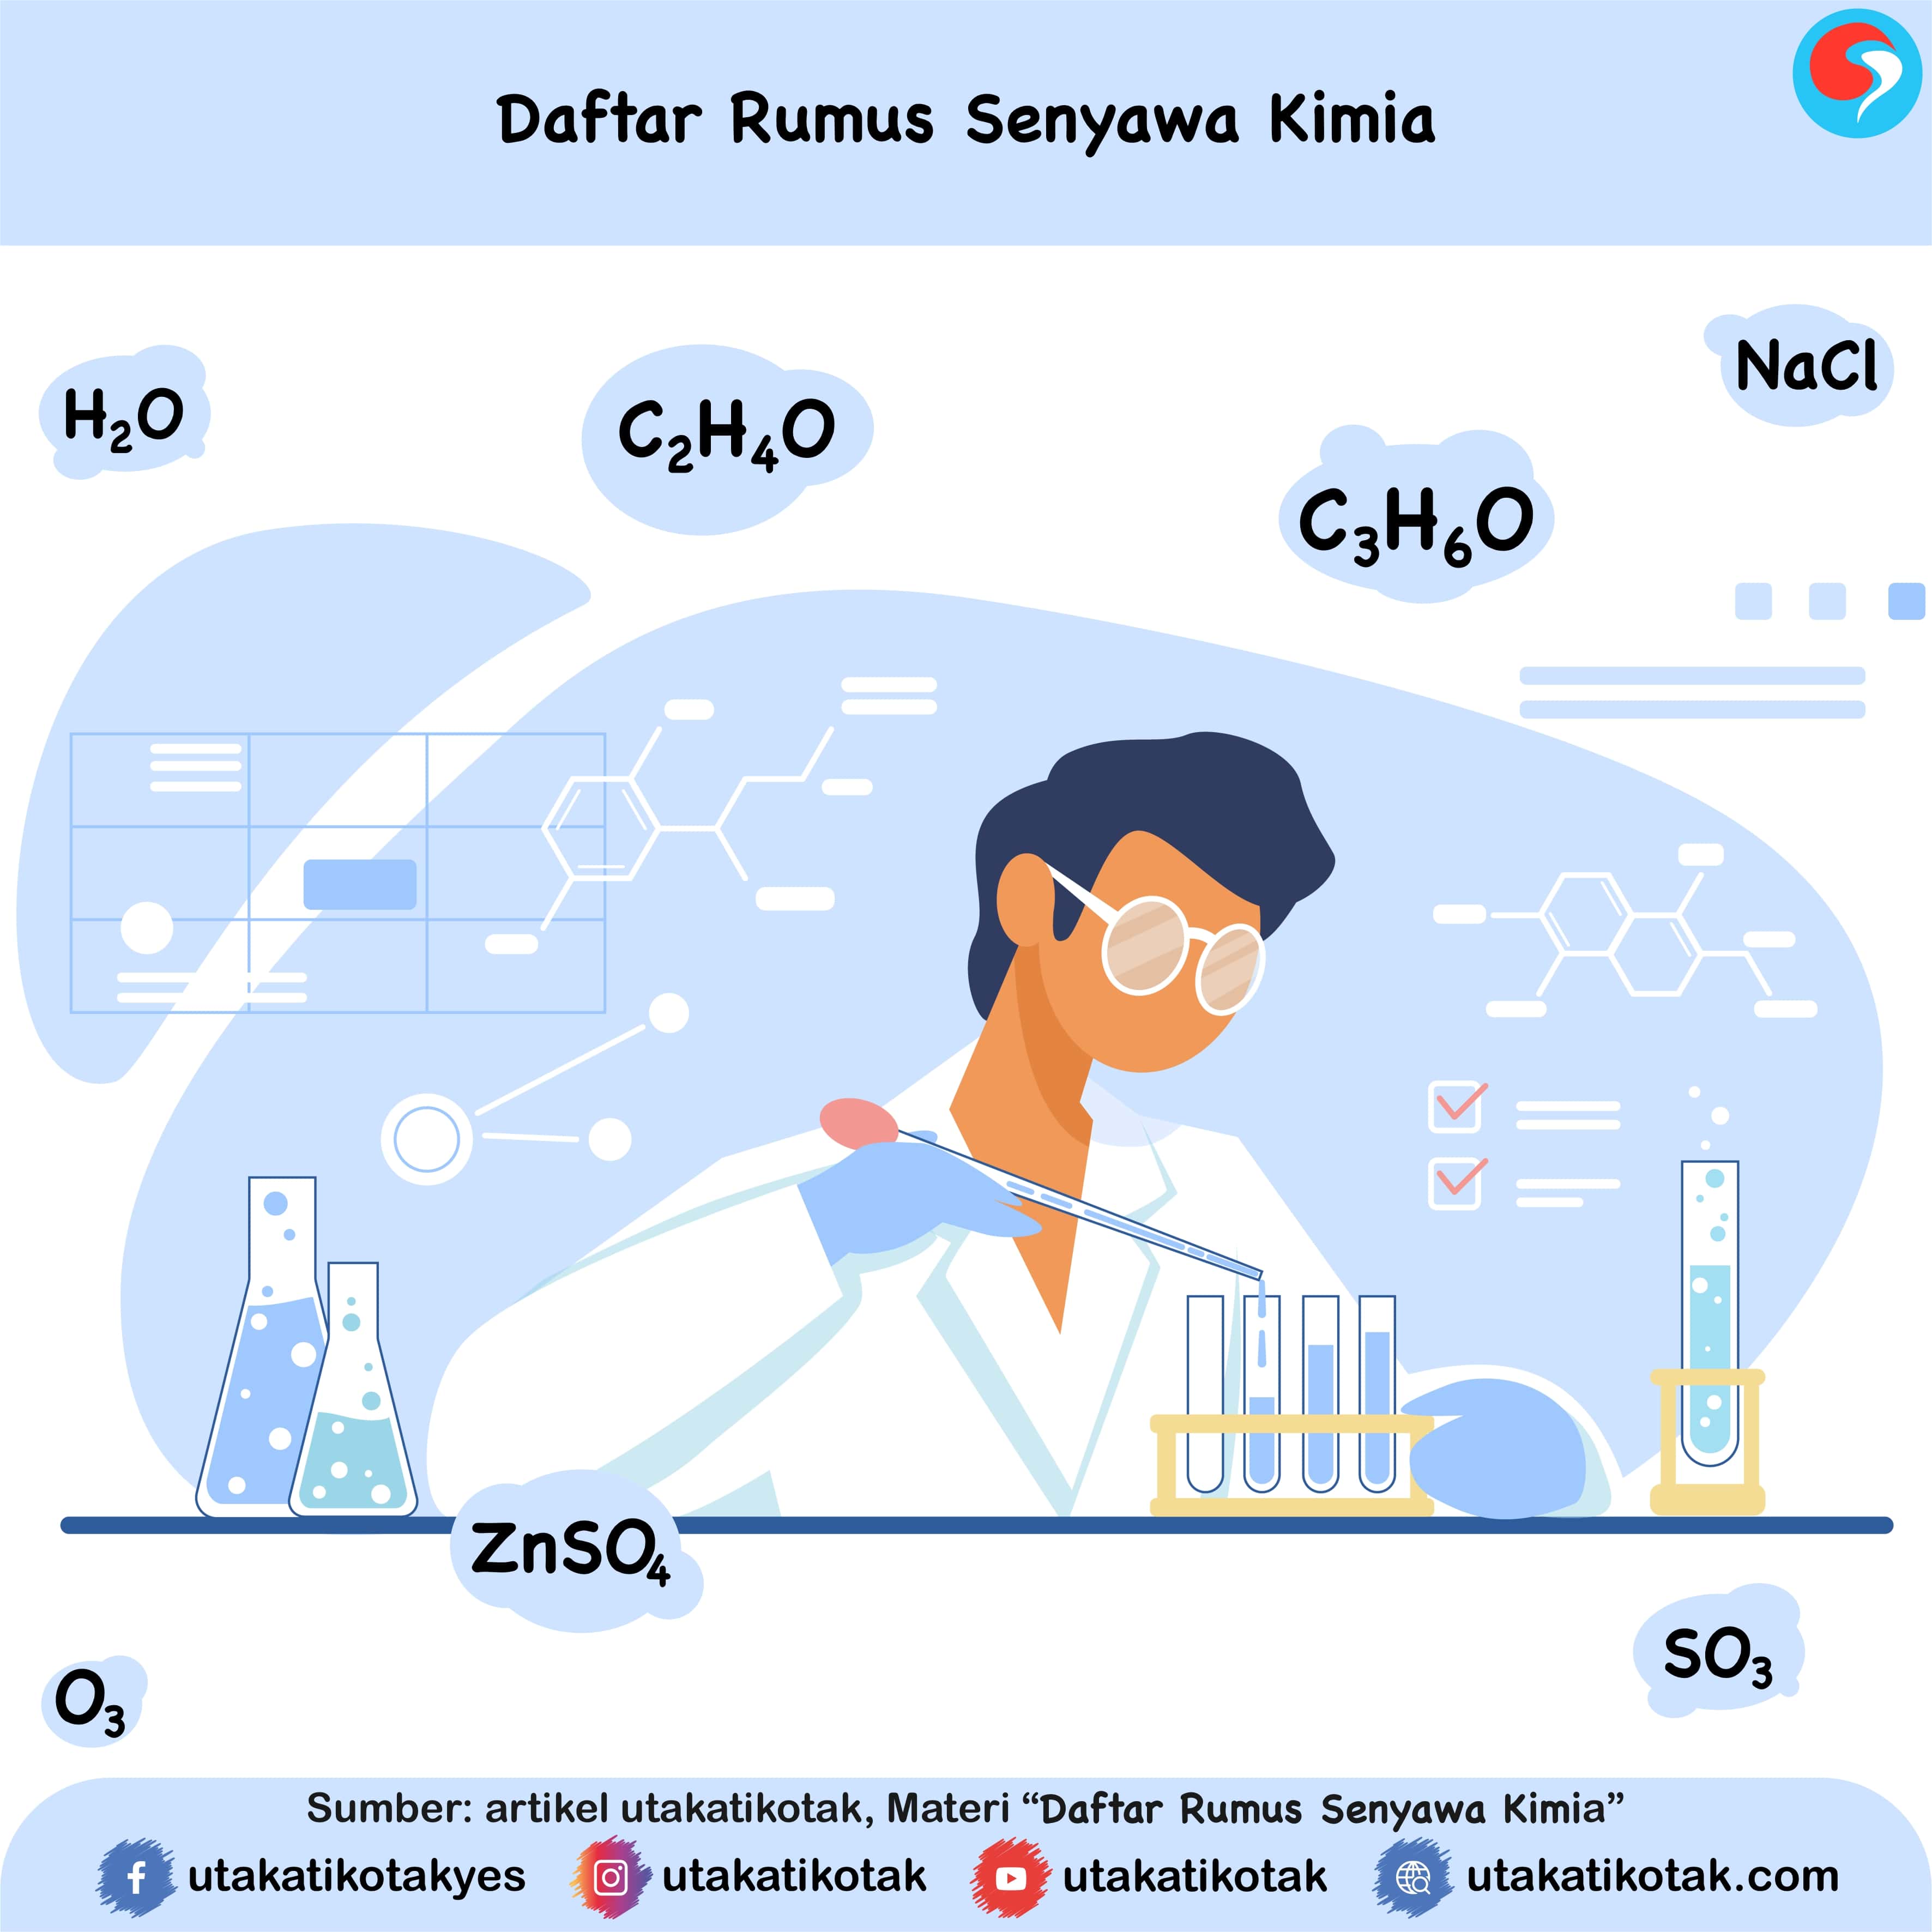 Daftar Rumus Senyawa Kimia. Lengkap!